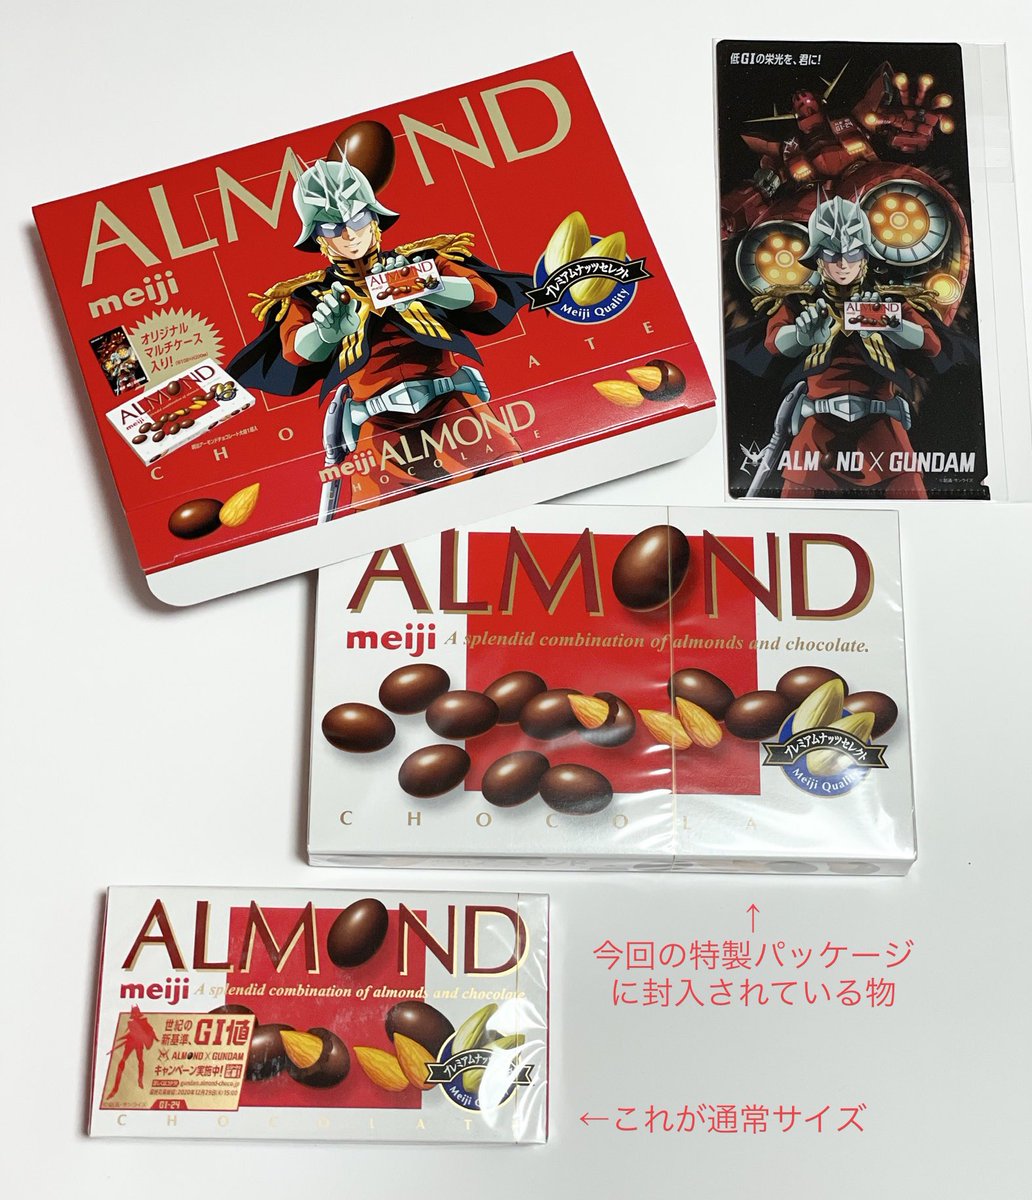 よっくん ローソンの Almond Gundam プレゼントキャンペーン 公式には情報のなかった特製パッケージの商品の中身は 通常商品より大きなサイズの物が封入 それと一緒に長3封筒ほどのサイズのクリアファイルが同梱されていました この特製パッケージ